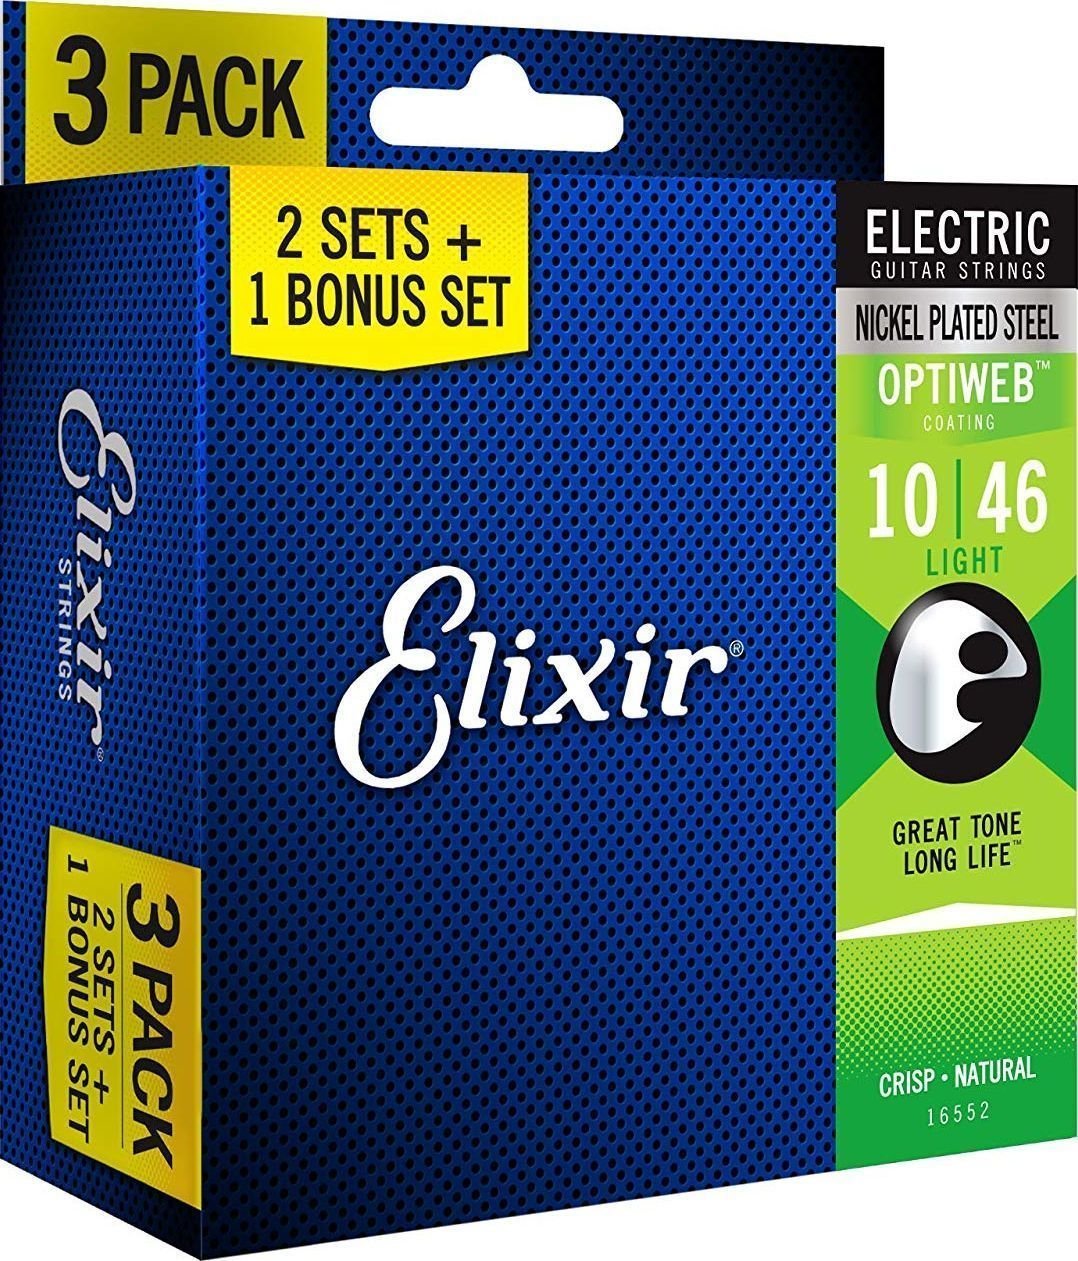 Snaren voor elektrische gitaar Elixir 16552 OPTIWEB Coating Light 10-46 3-PACK